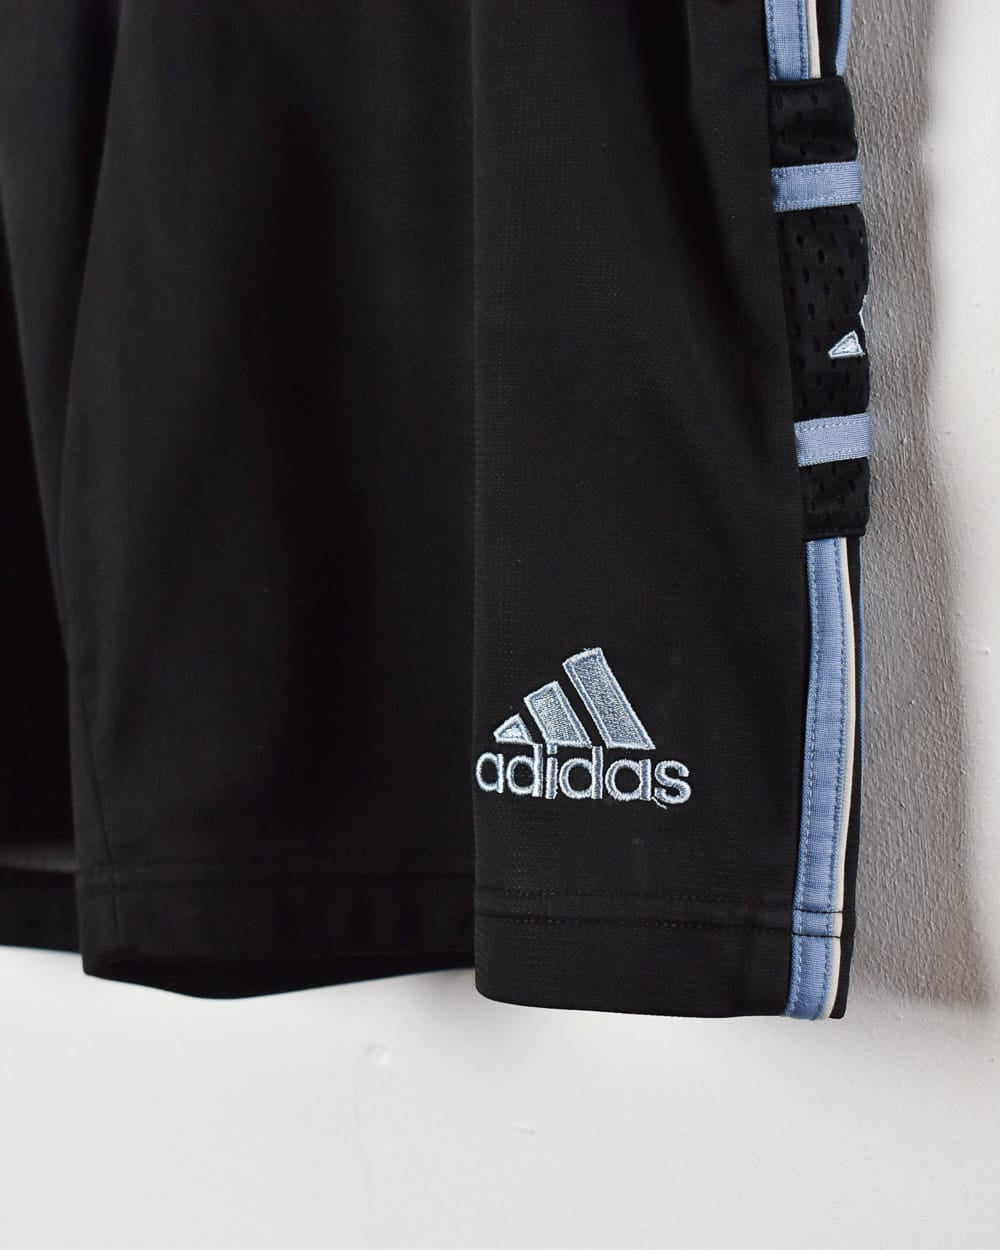 Black Adidas Shorts - Medium